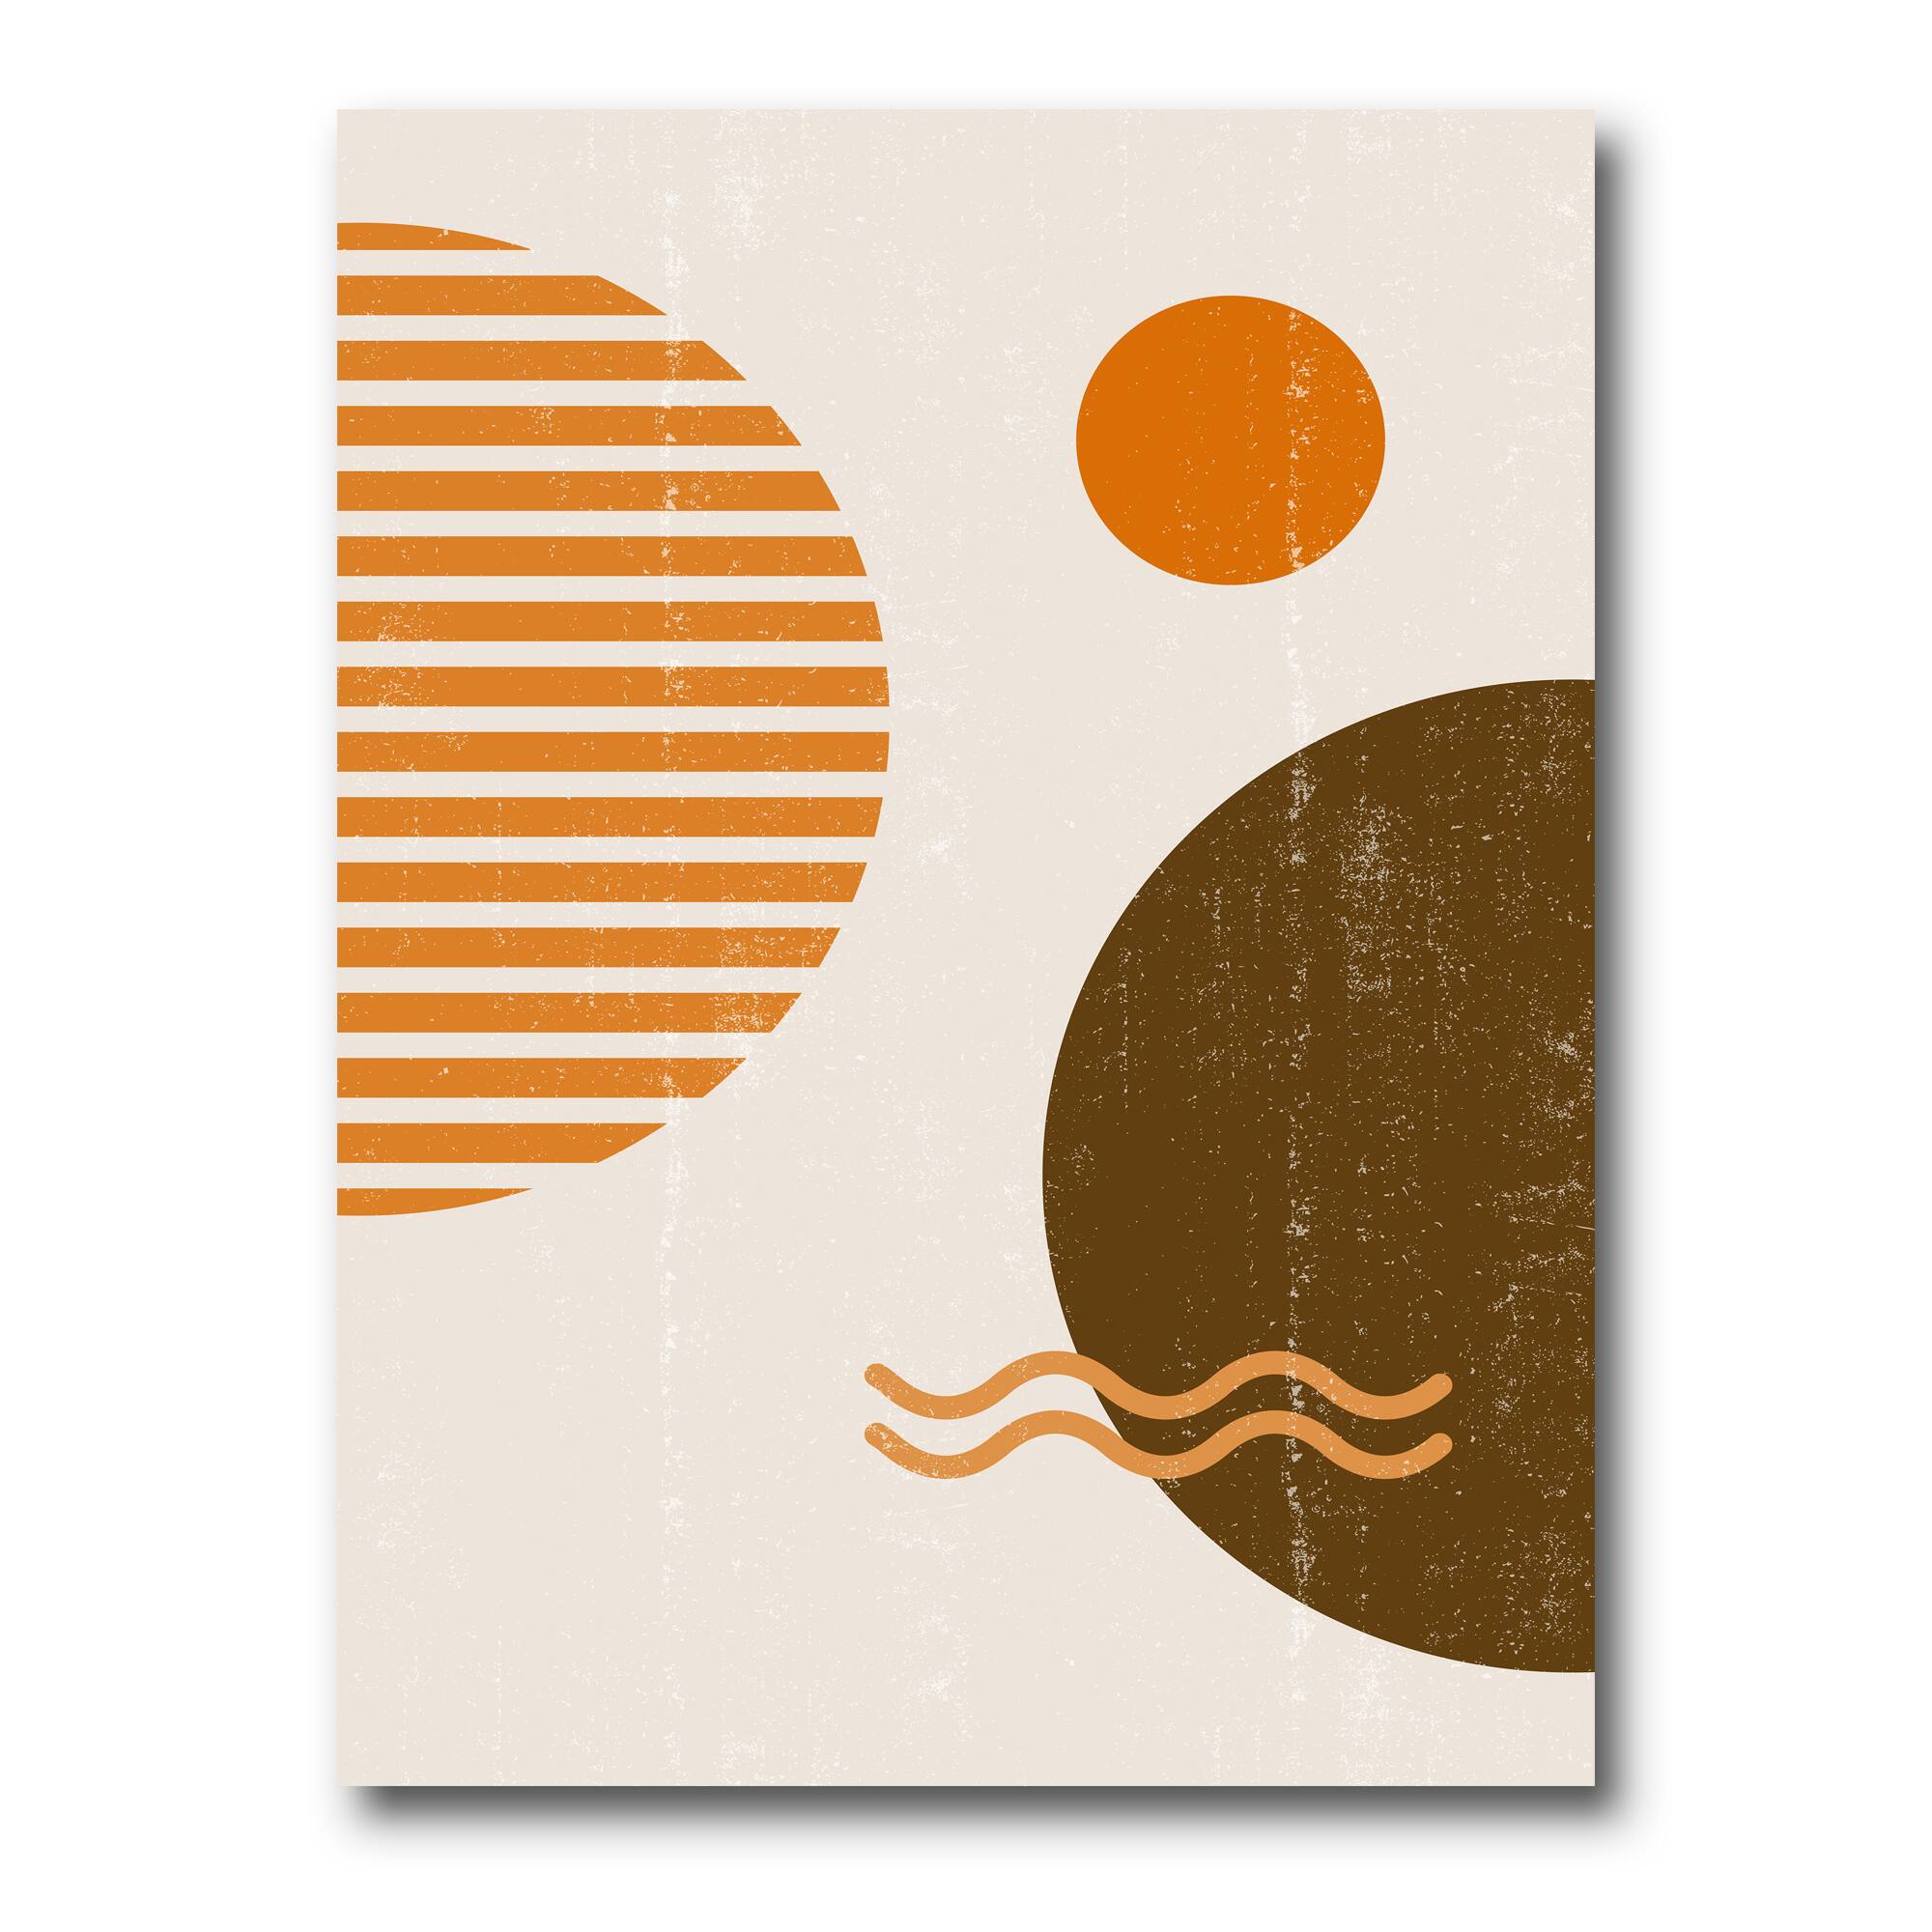 Designart - Abstract Minimal Sun and Moon In Earth Tones III - Modern Canvas Wall Art Print